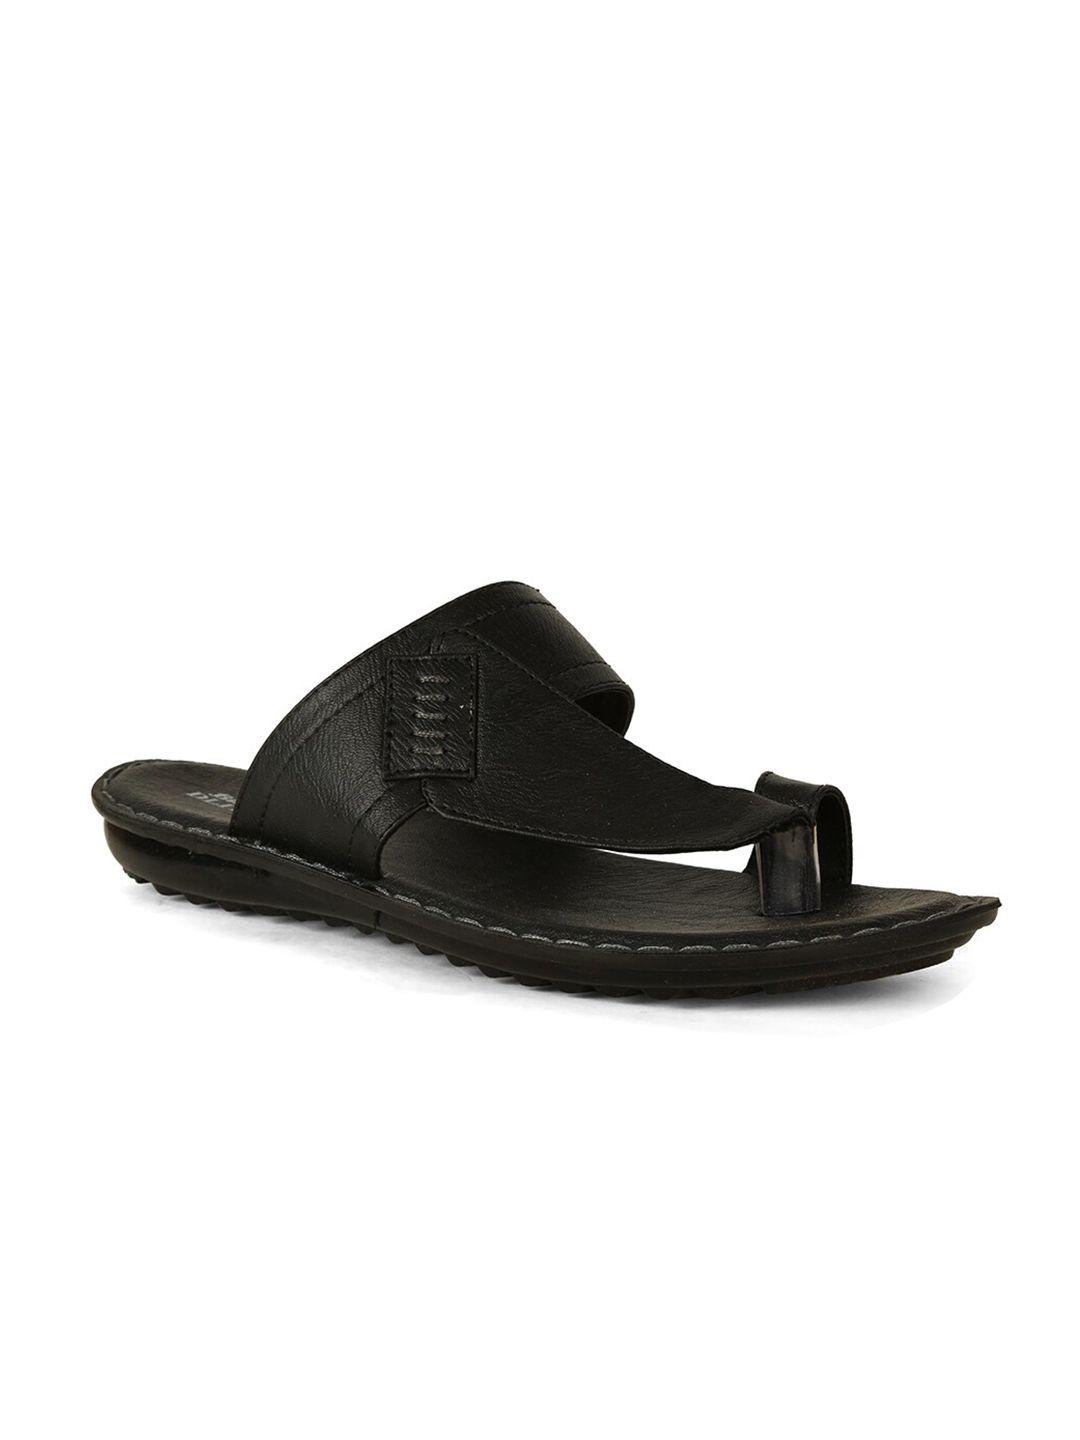 bata men black comfort sandals